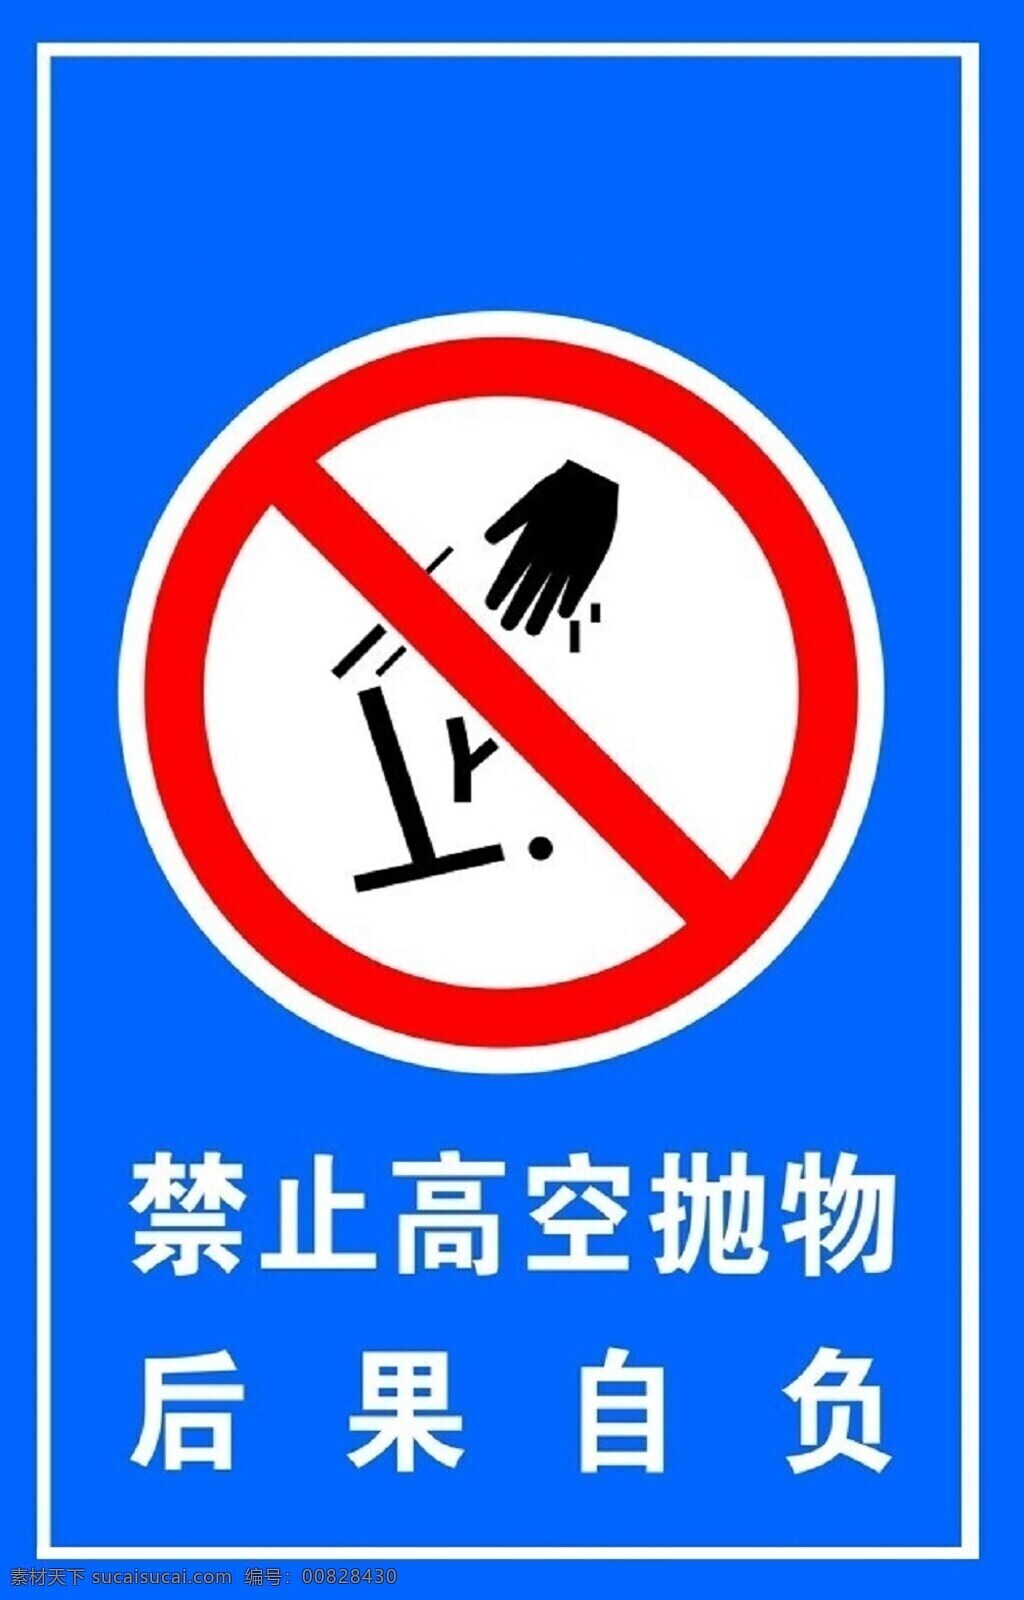 禁止高空抛物 禁止 高空抛物 标示 标牌 标志图标 公共标识标志